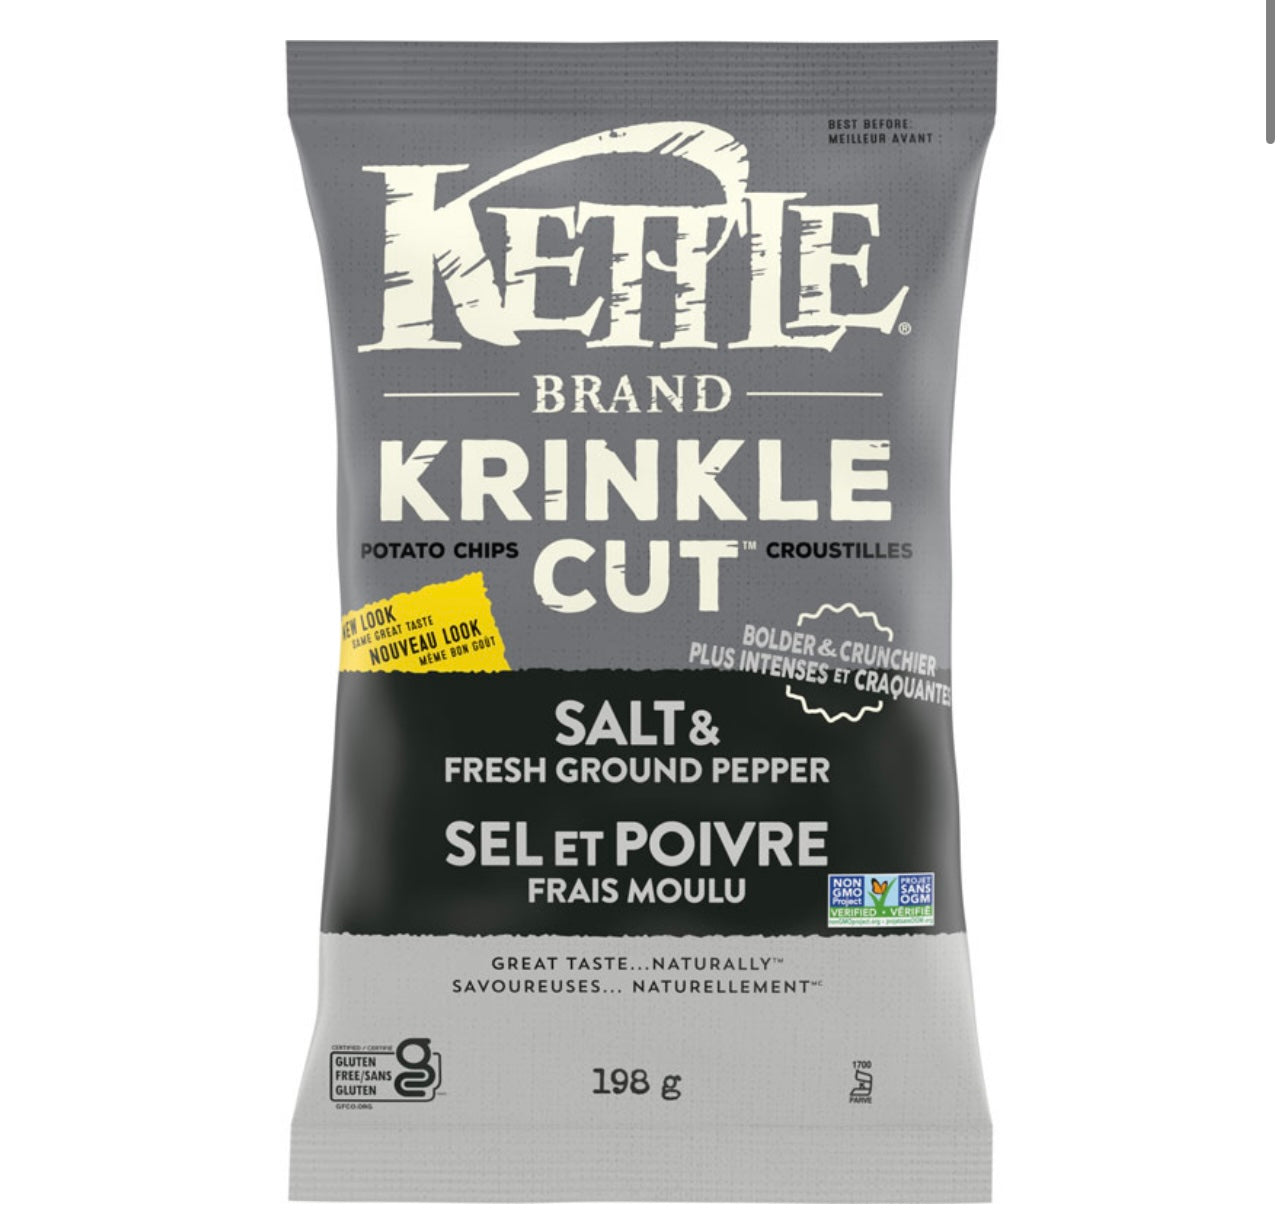 Kettle Salt & Fresh Ground Pepper